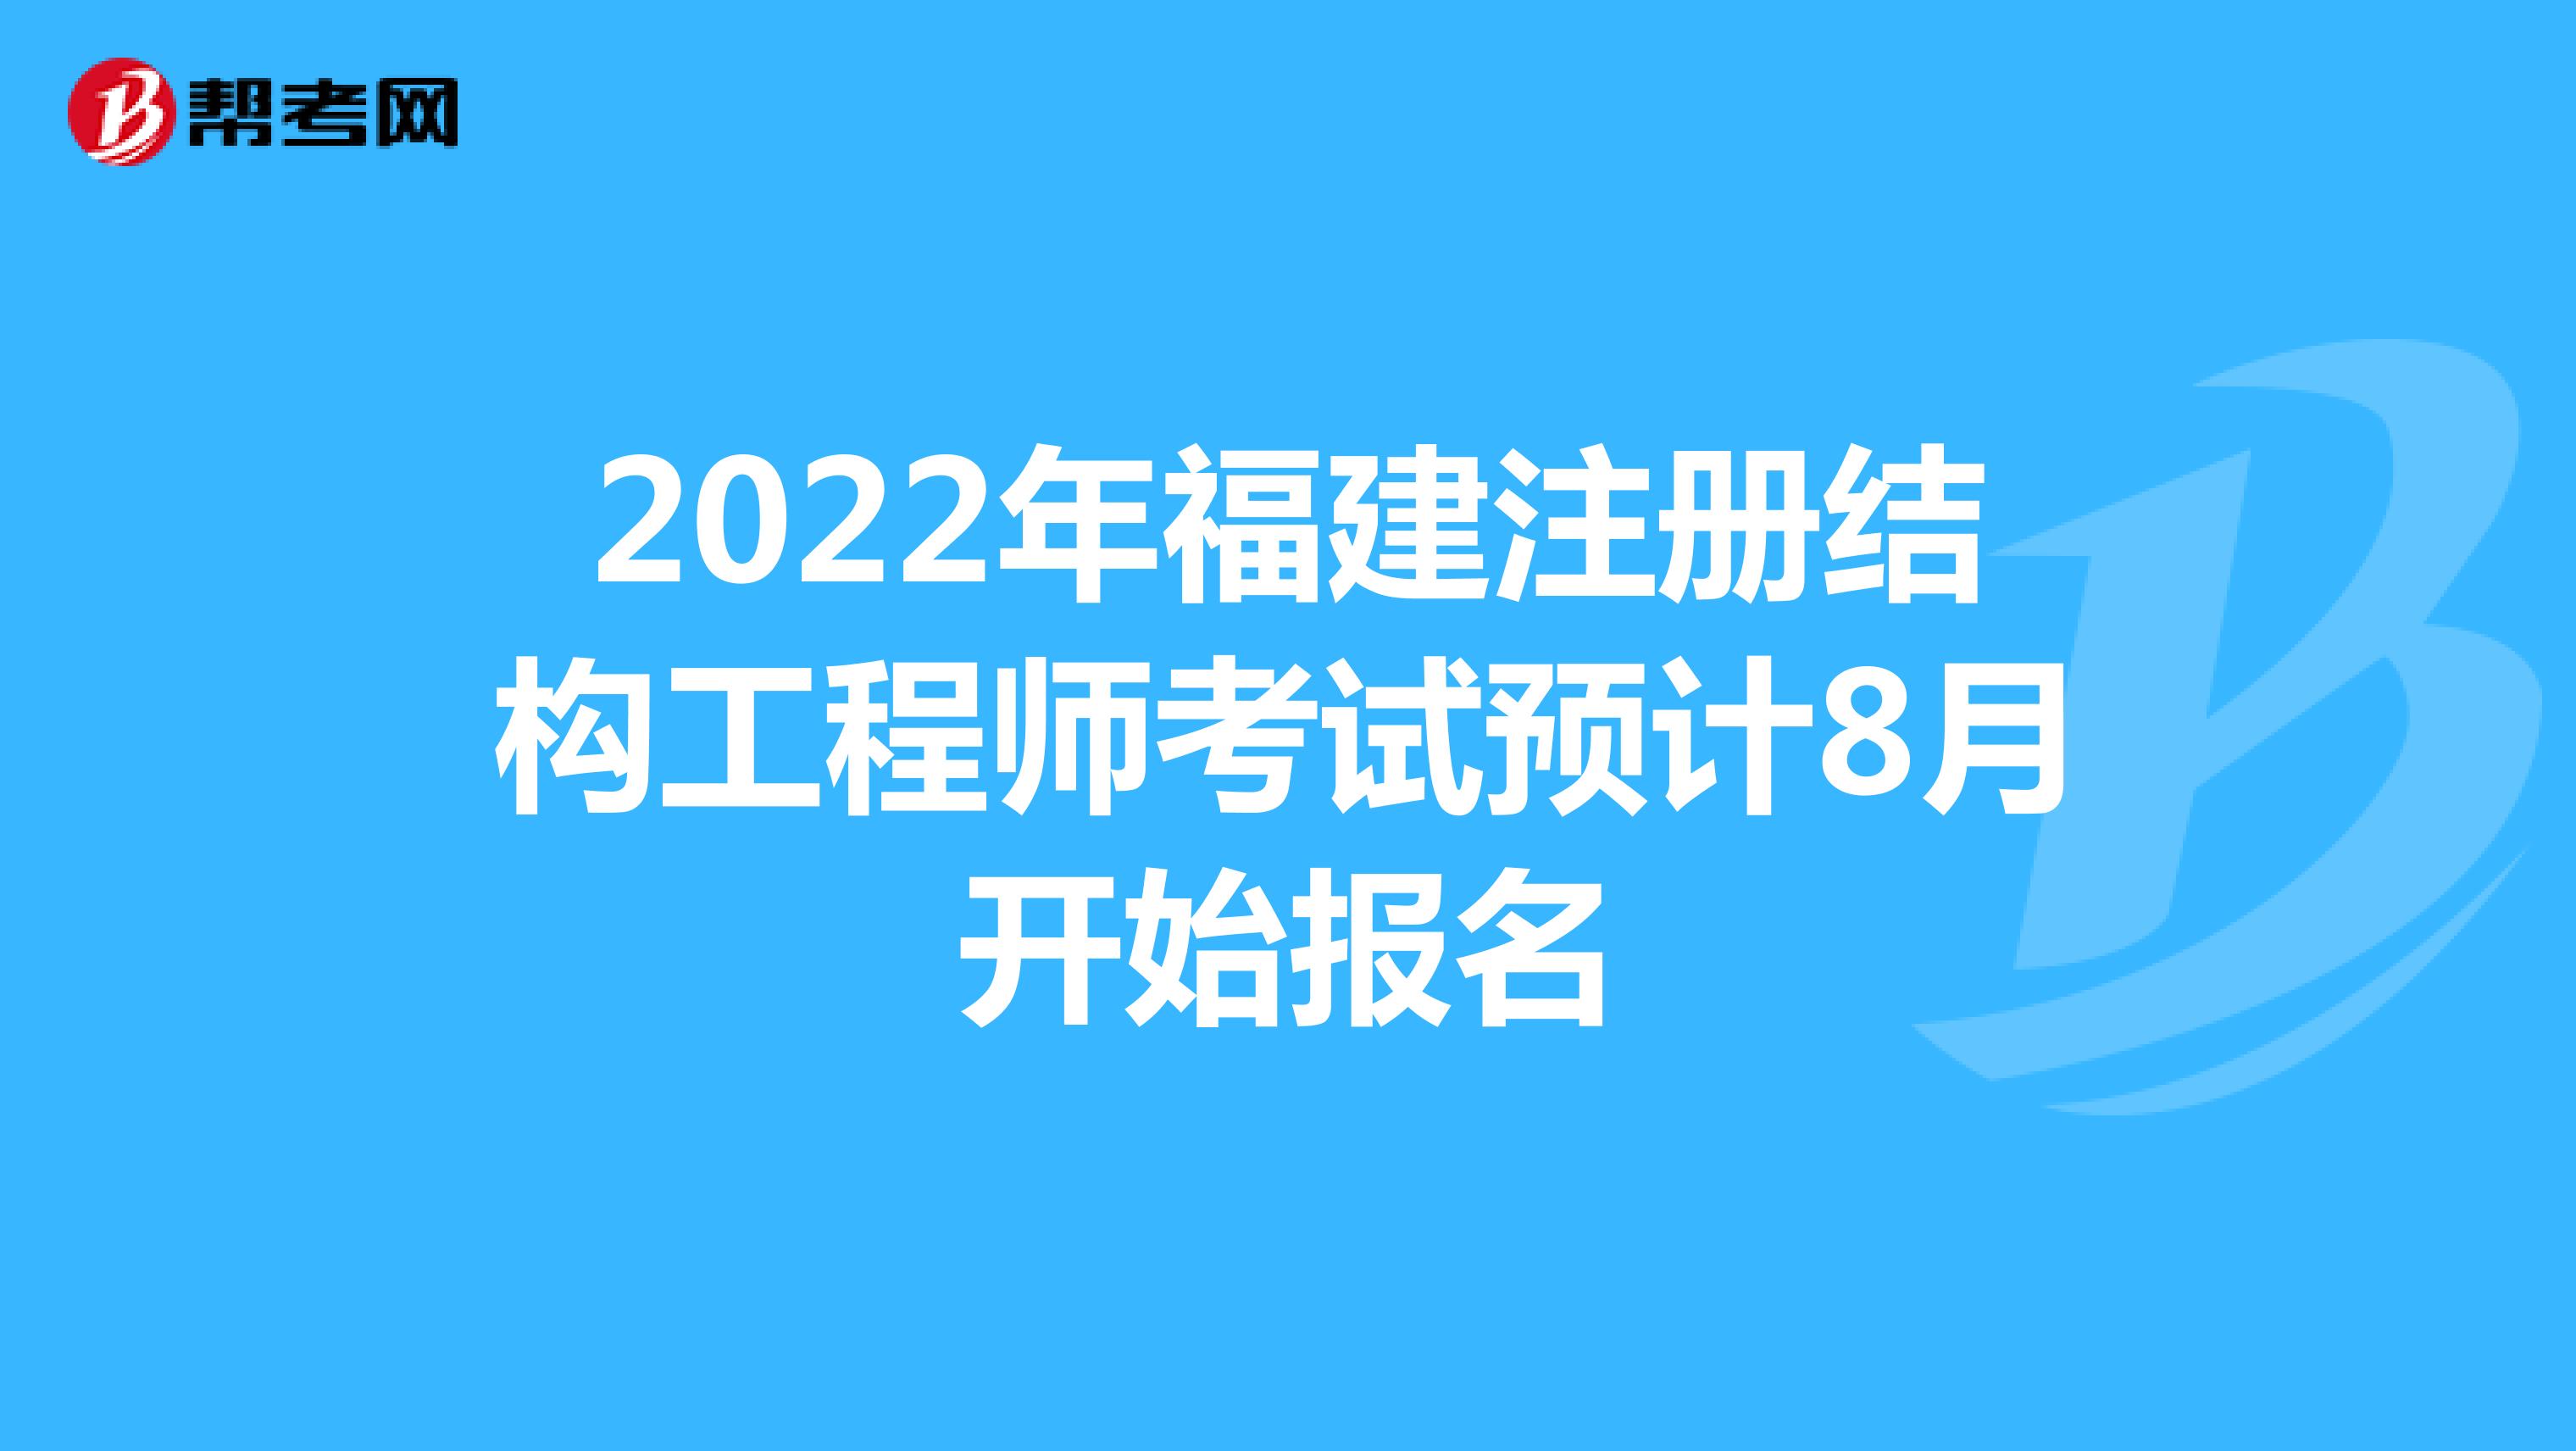 2022年福建注册结构工程师考试预计8月开始报名